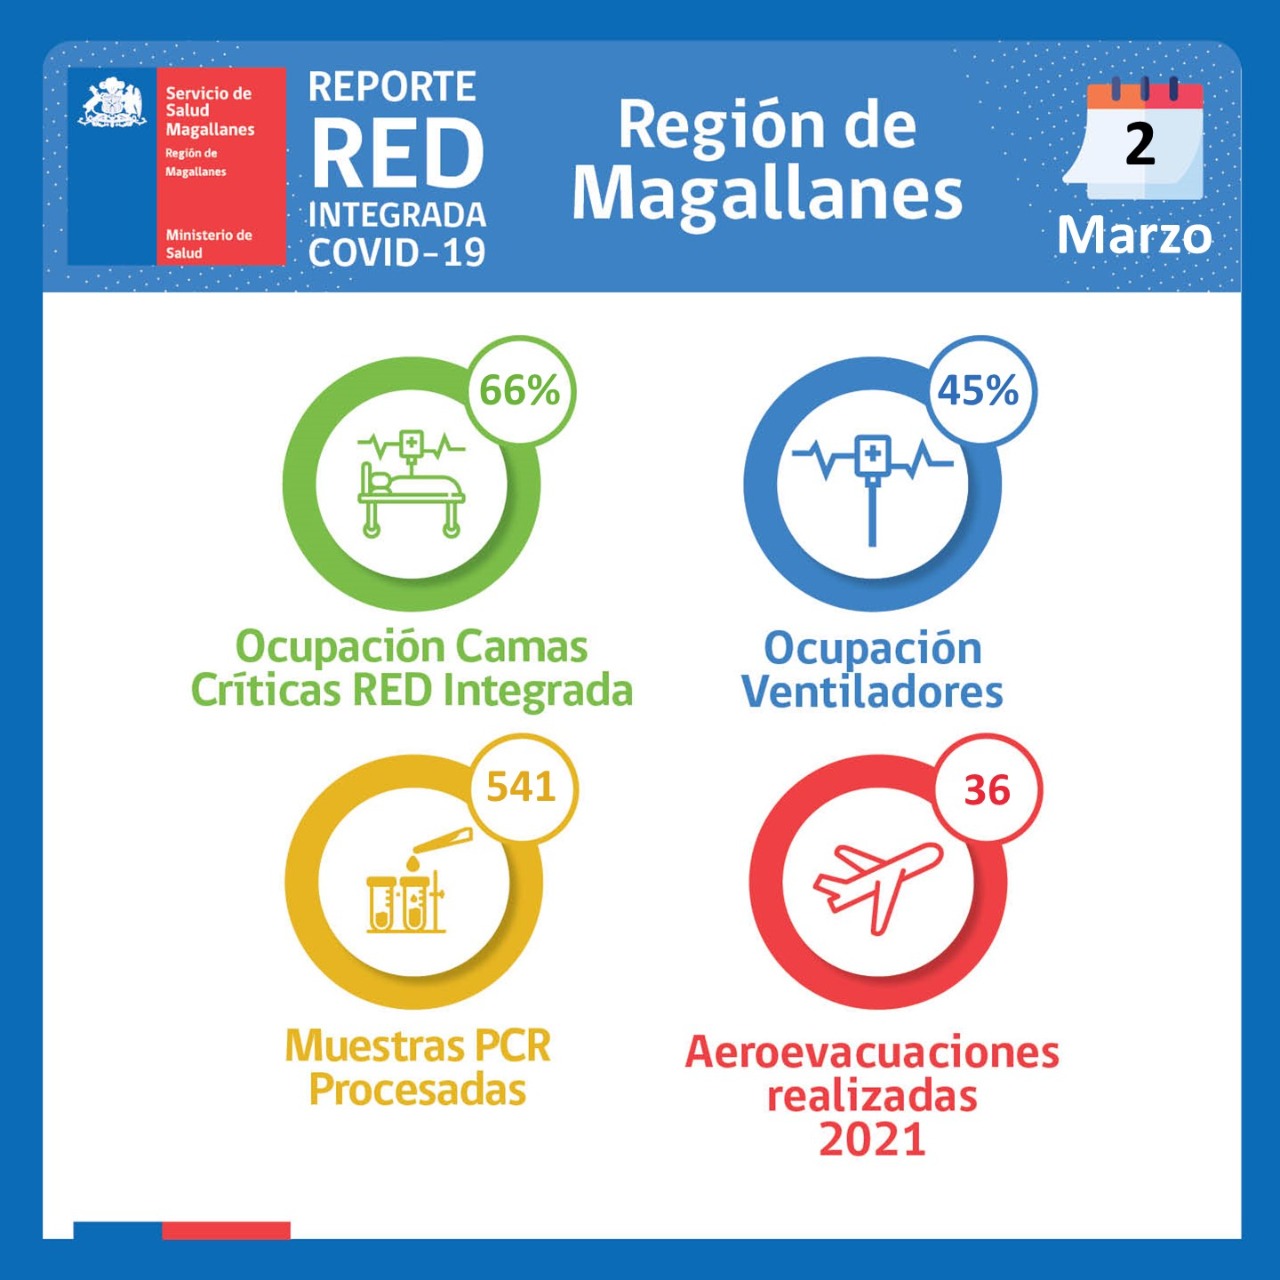 Estado de la Red Integrada de Covid-19 en Magallanes, al martes 2 de marzo